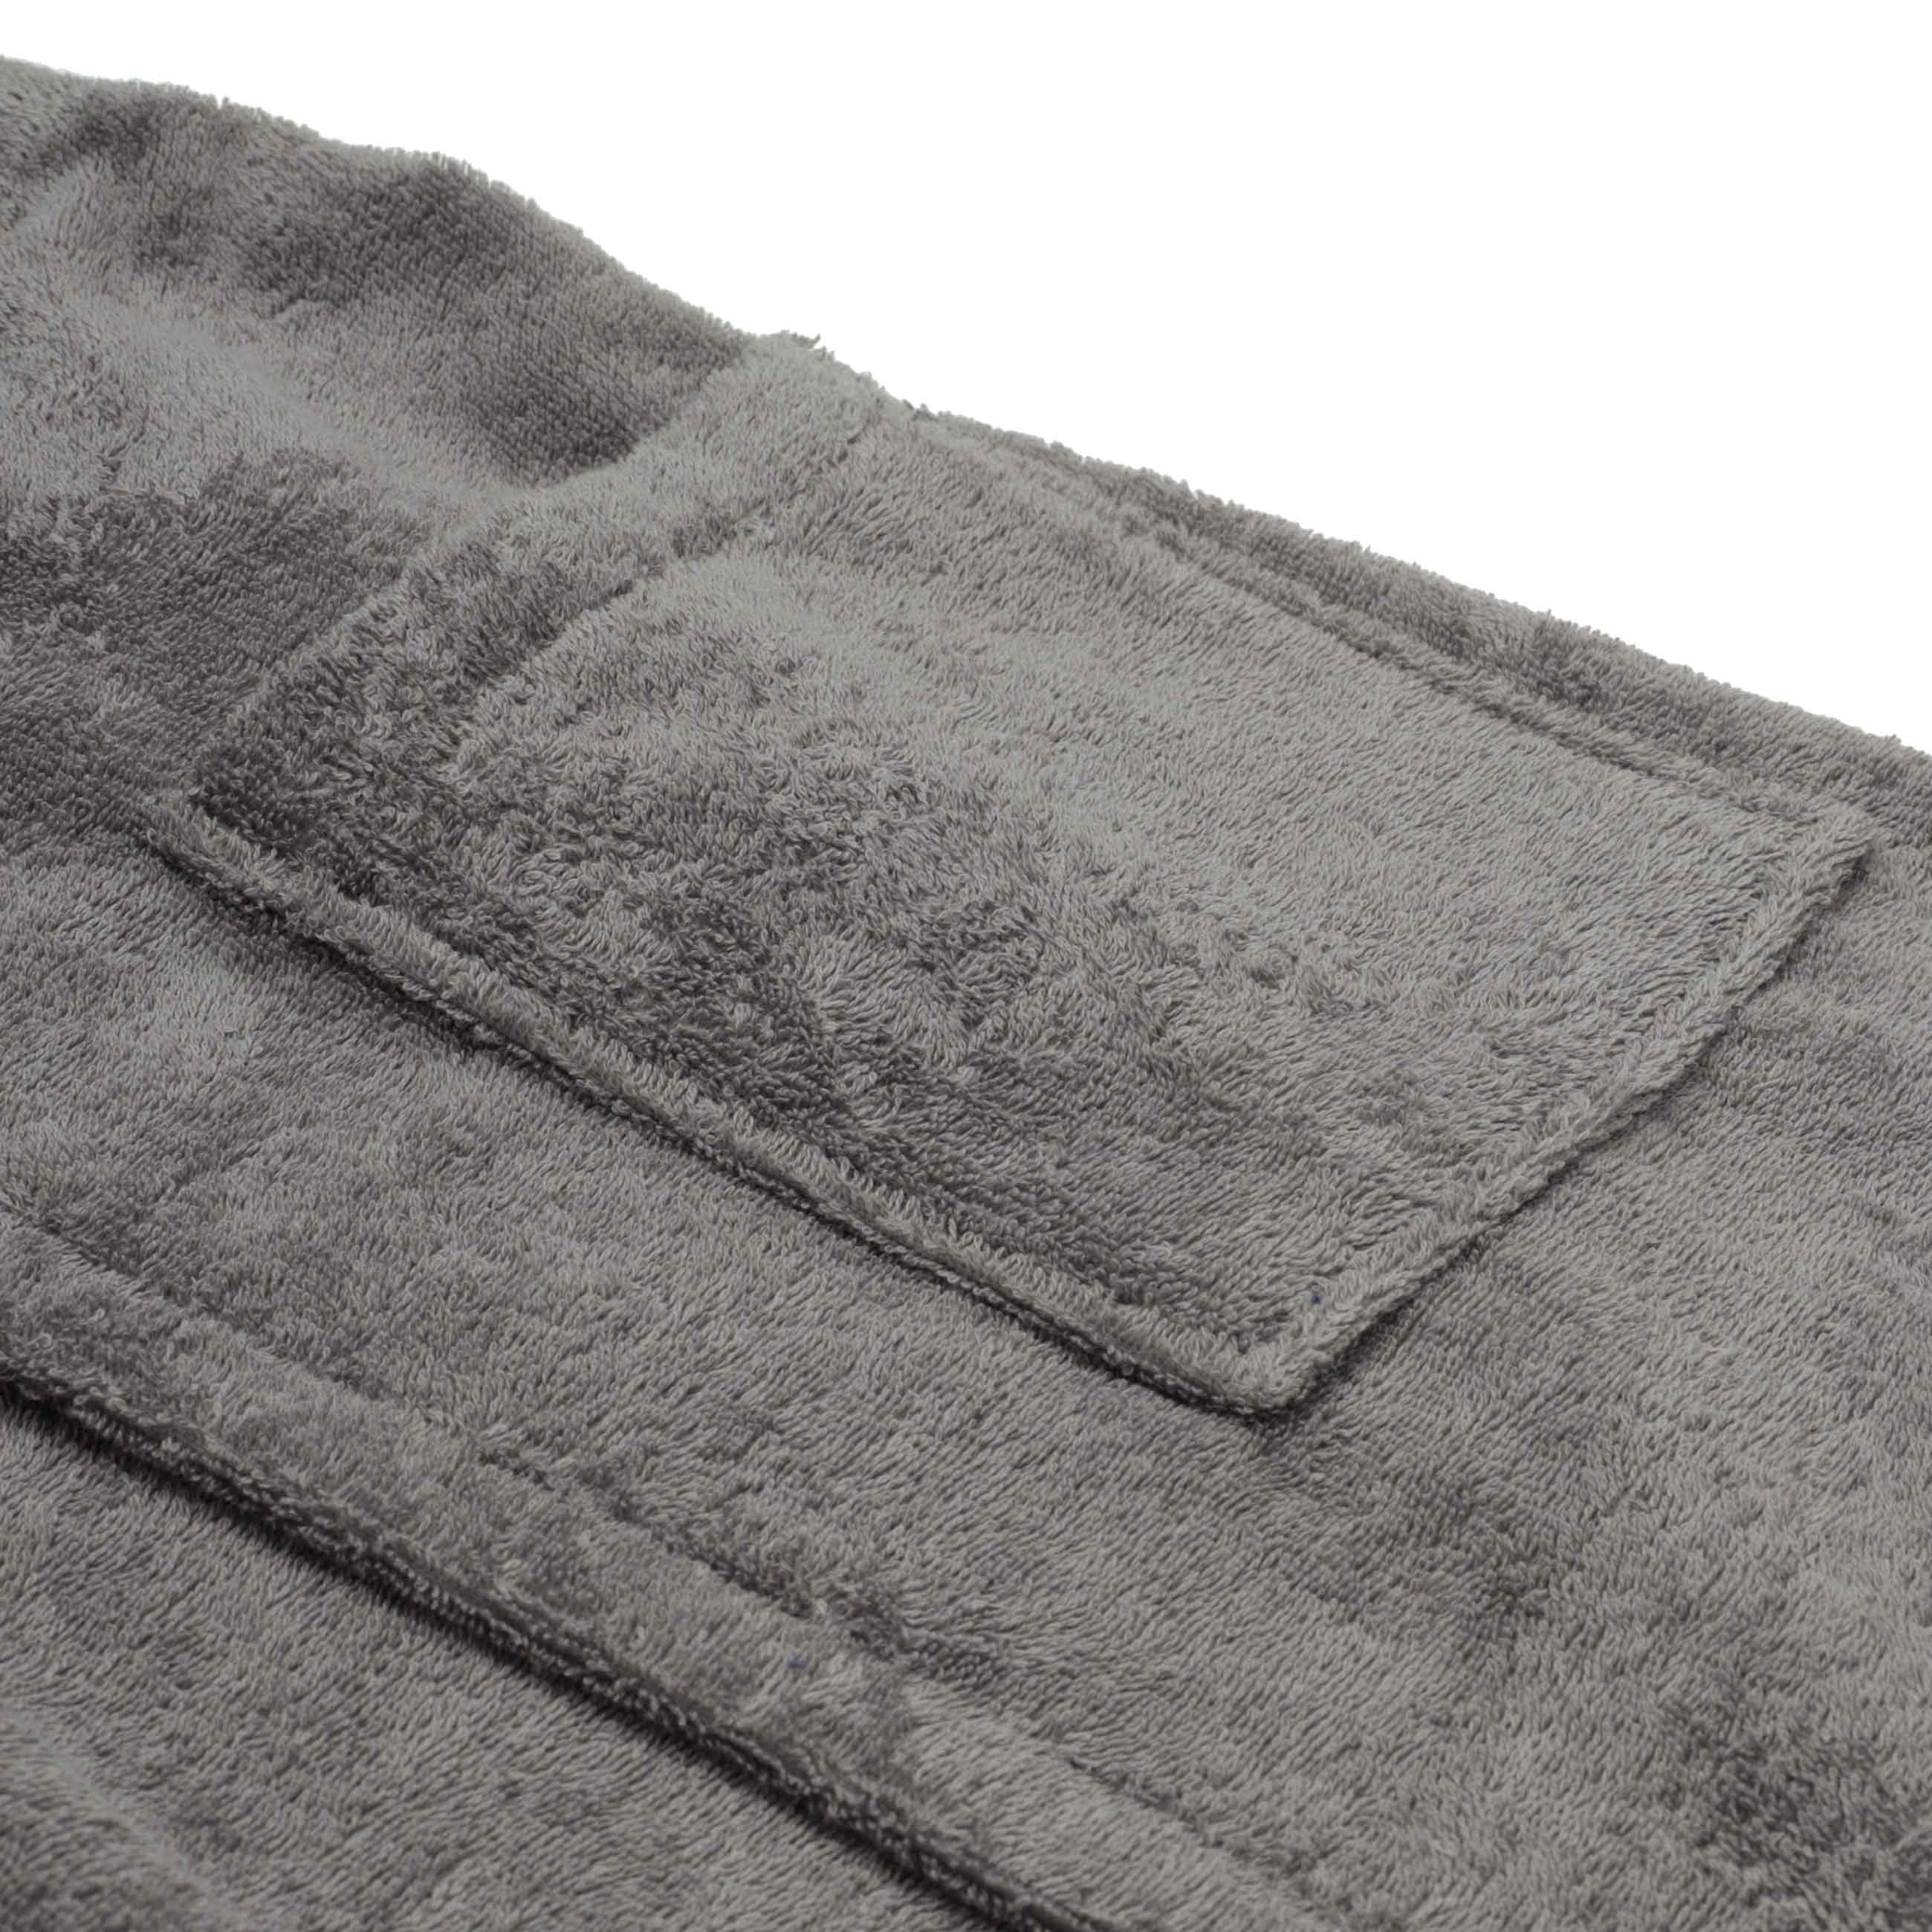 Полотенце-килт мужское, 60х140 см, на липучке, хлопок, темно-серое, Spa towel изображение № 4